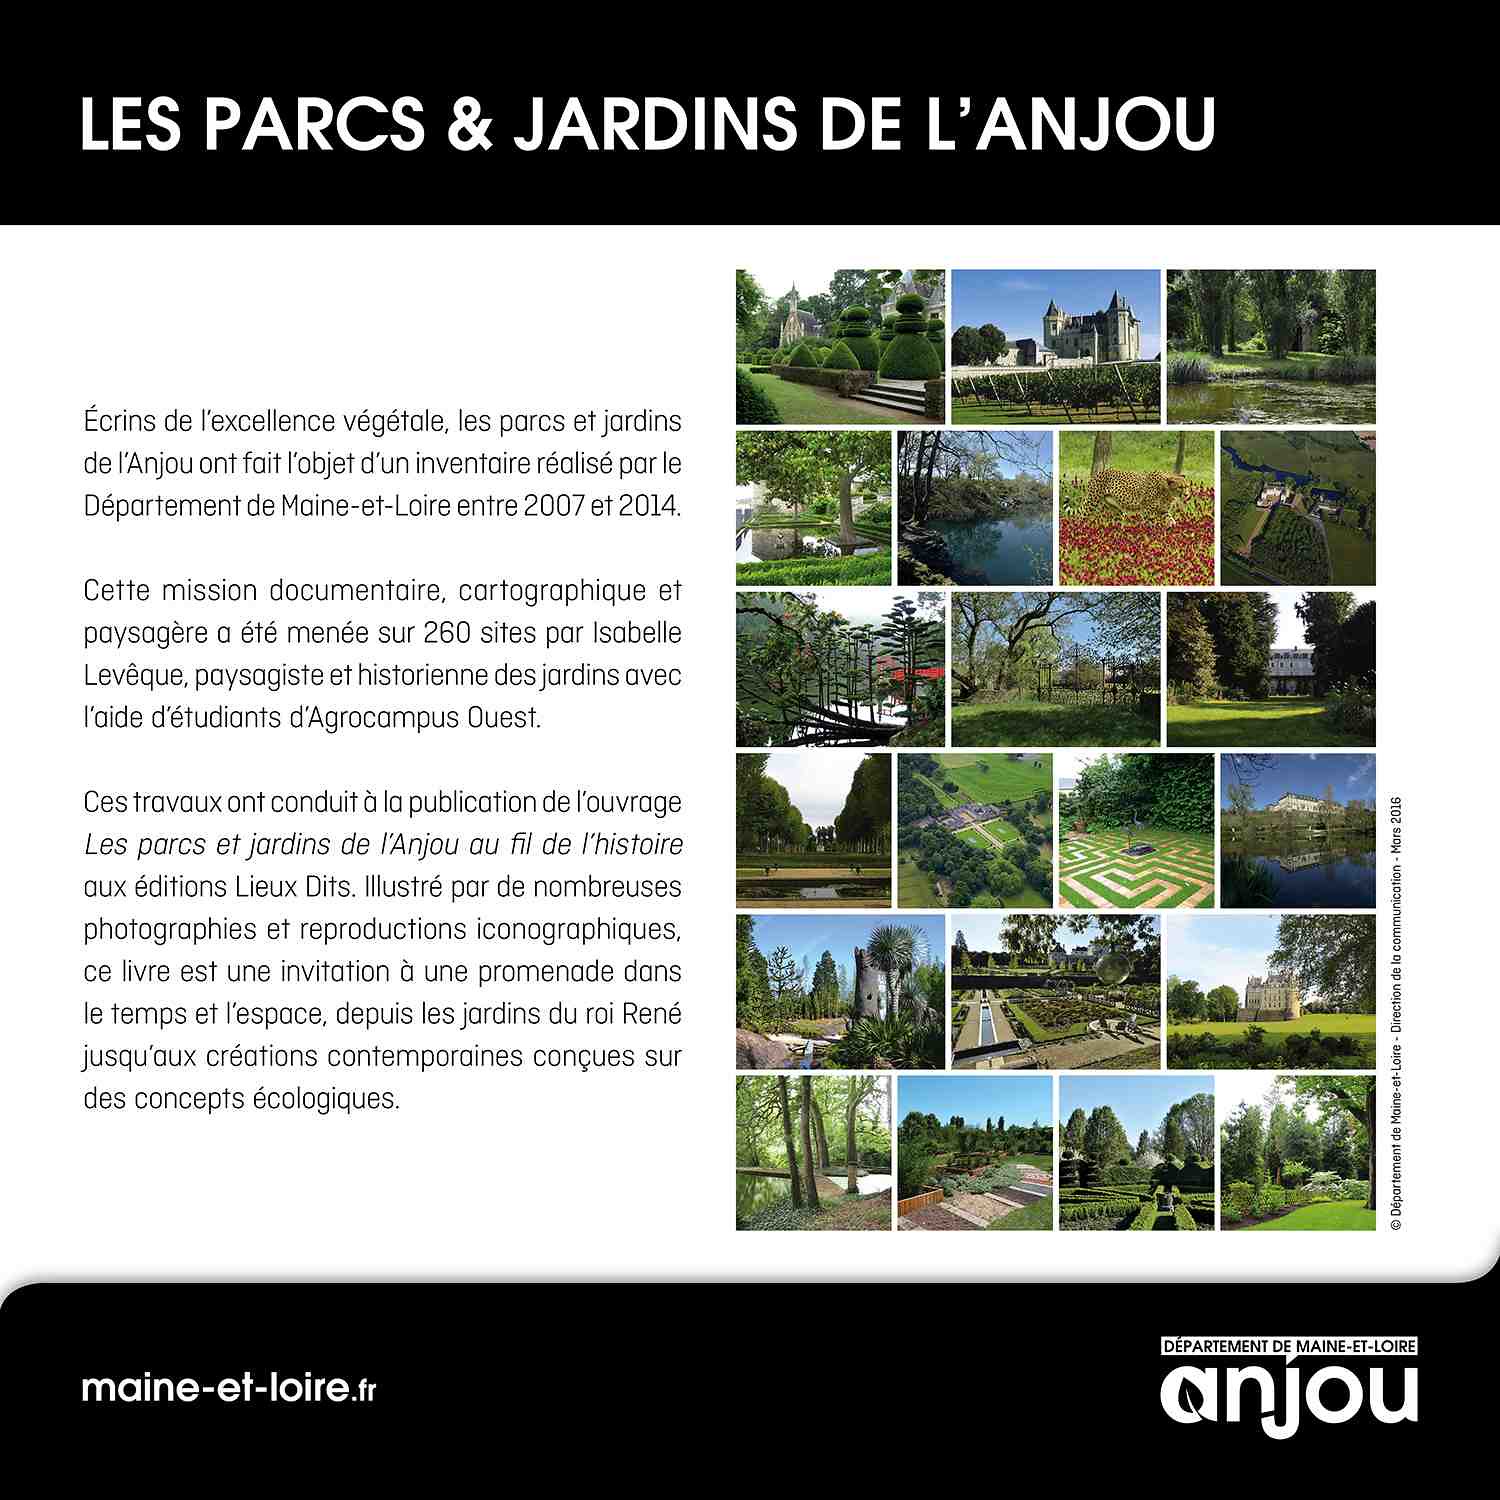 Les Parcs & Jardins de l’Anjou